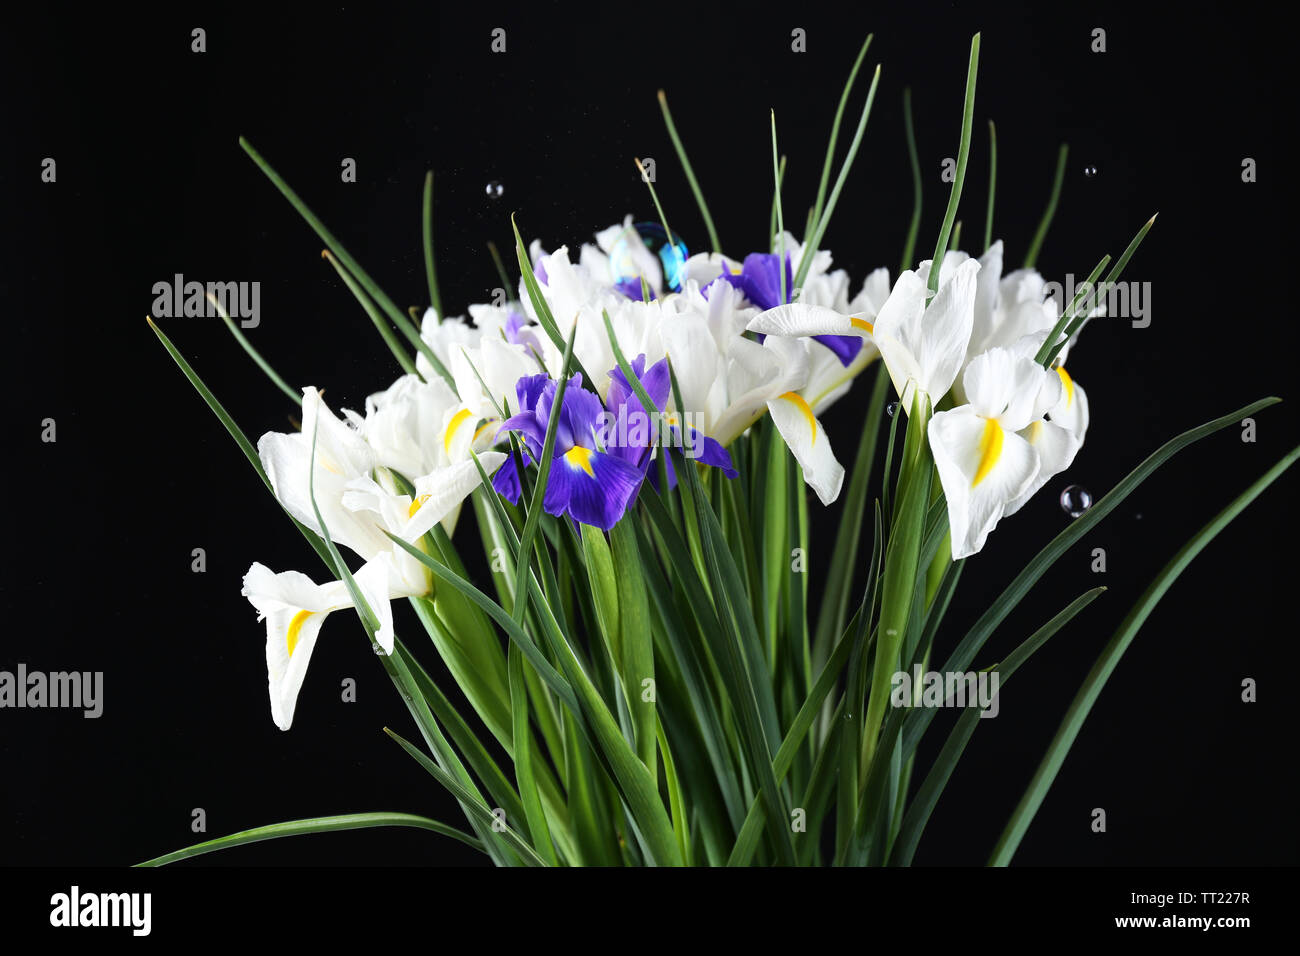 Beautiful irises on black background Stock Photo